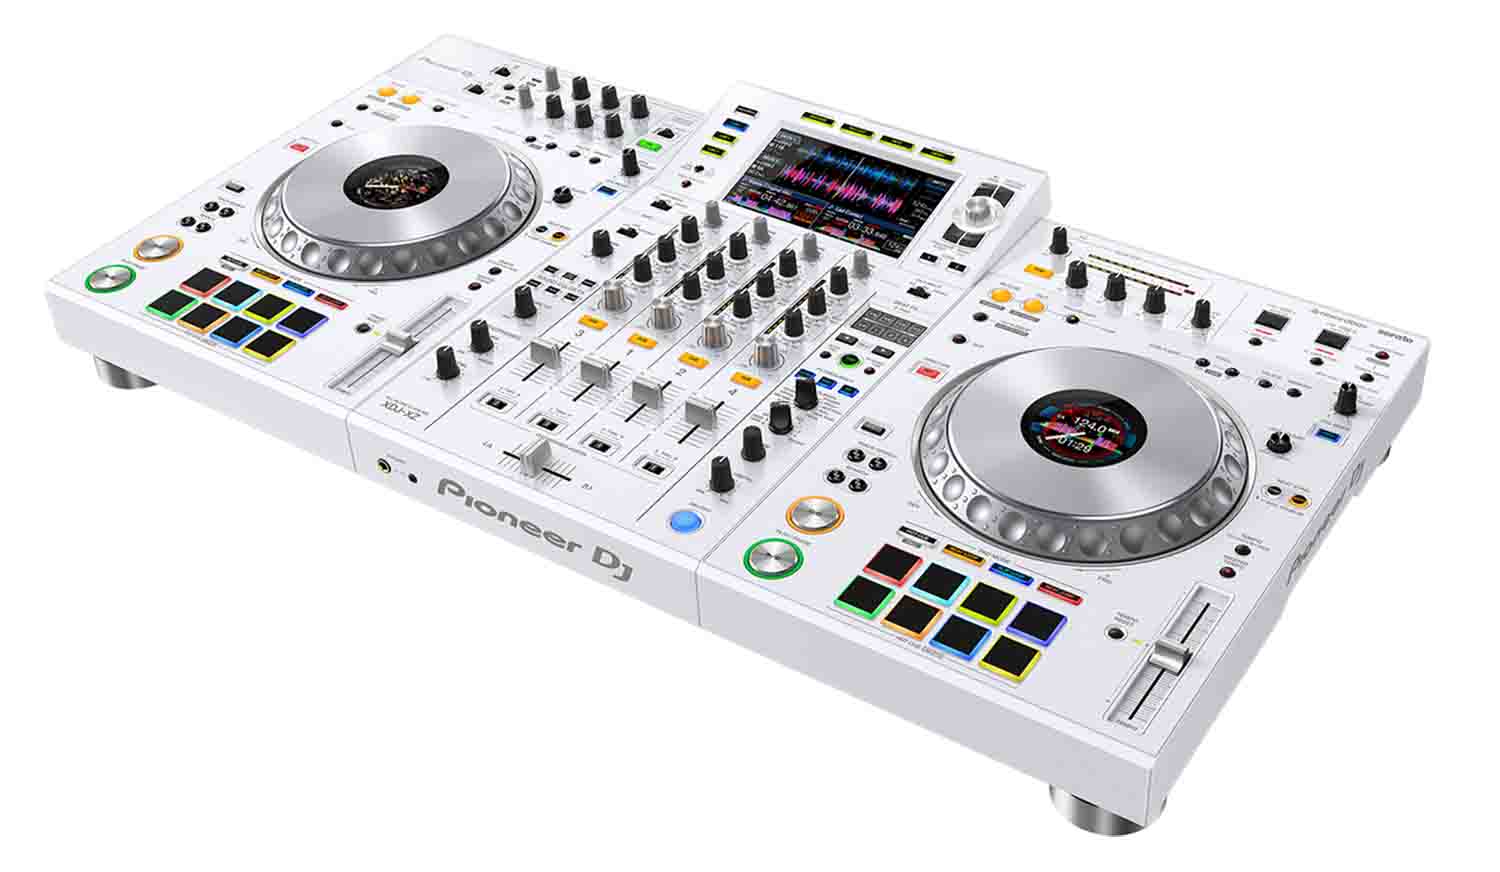 B-Stock Pioneer DJ XDJ-XZ-W 4-channel Digital DJ Controller System Stand Alone - White - Hollywood DJ